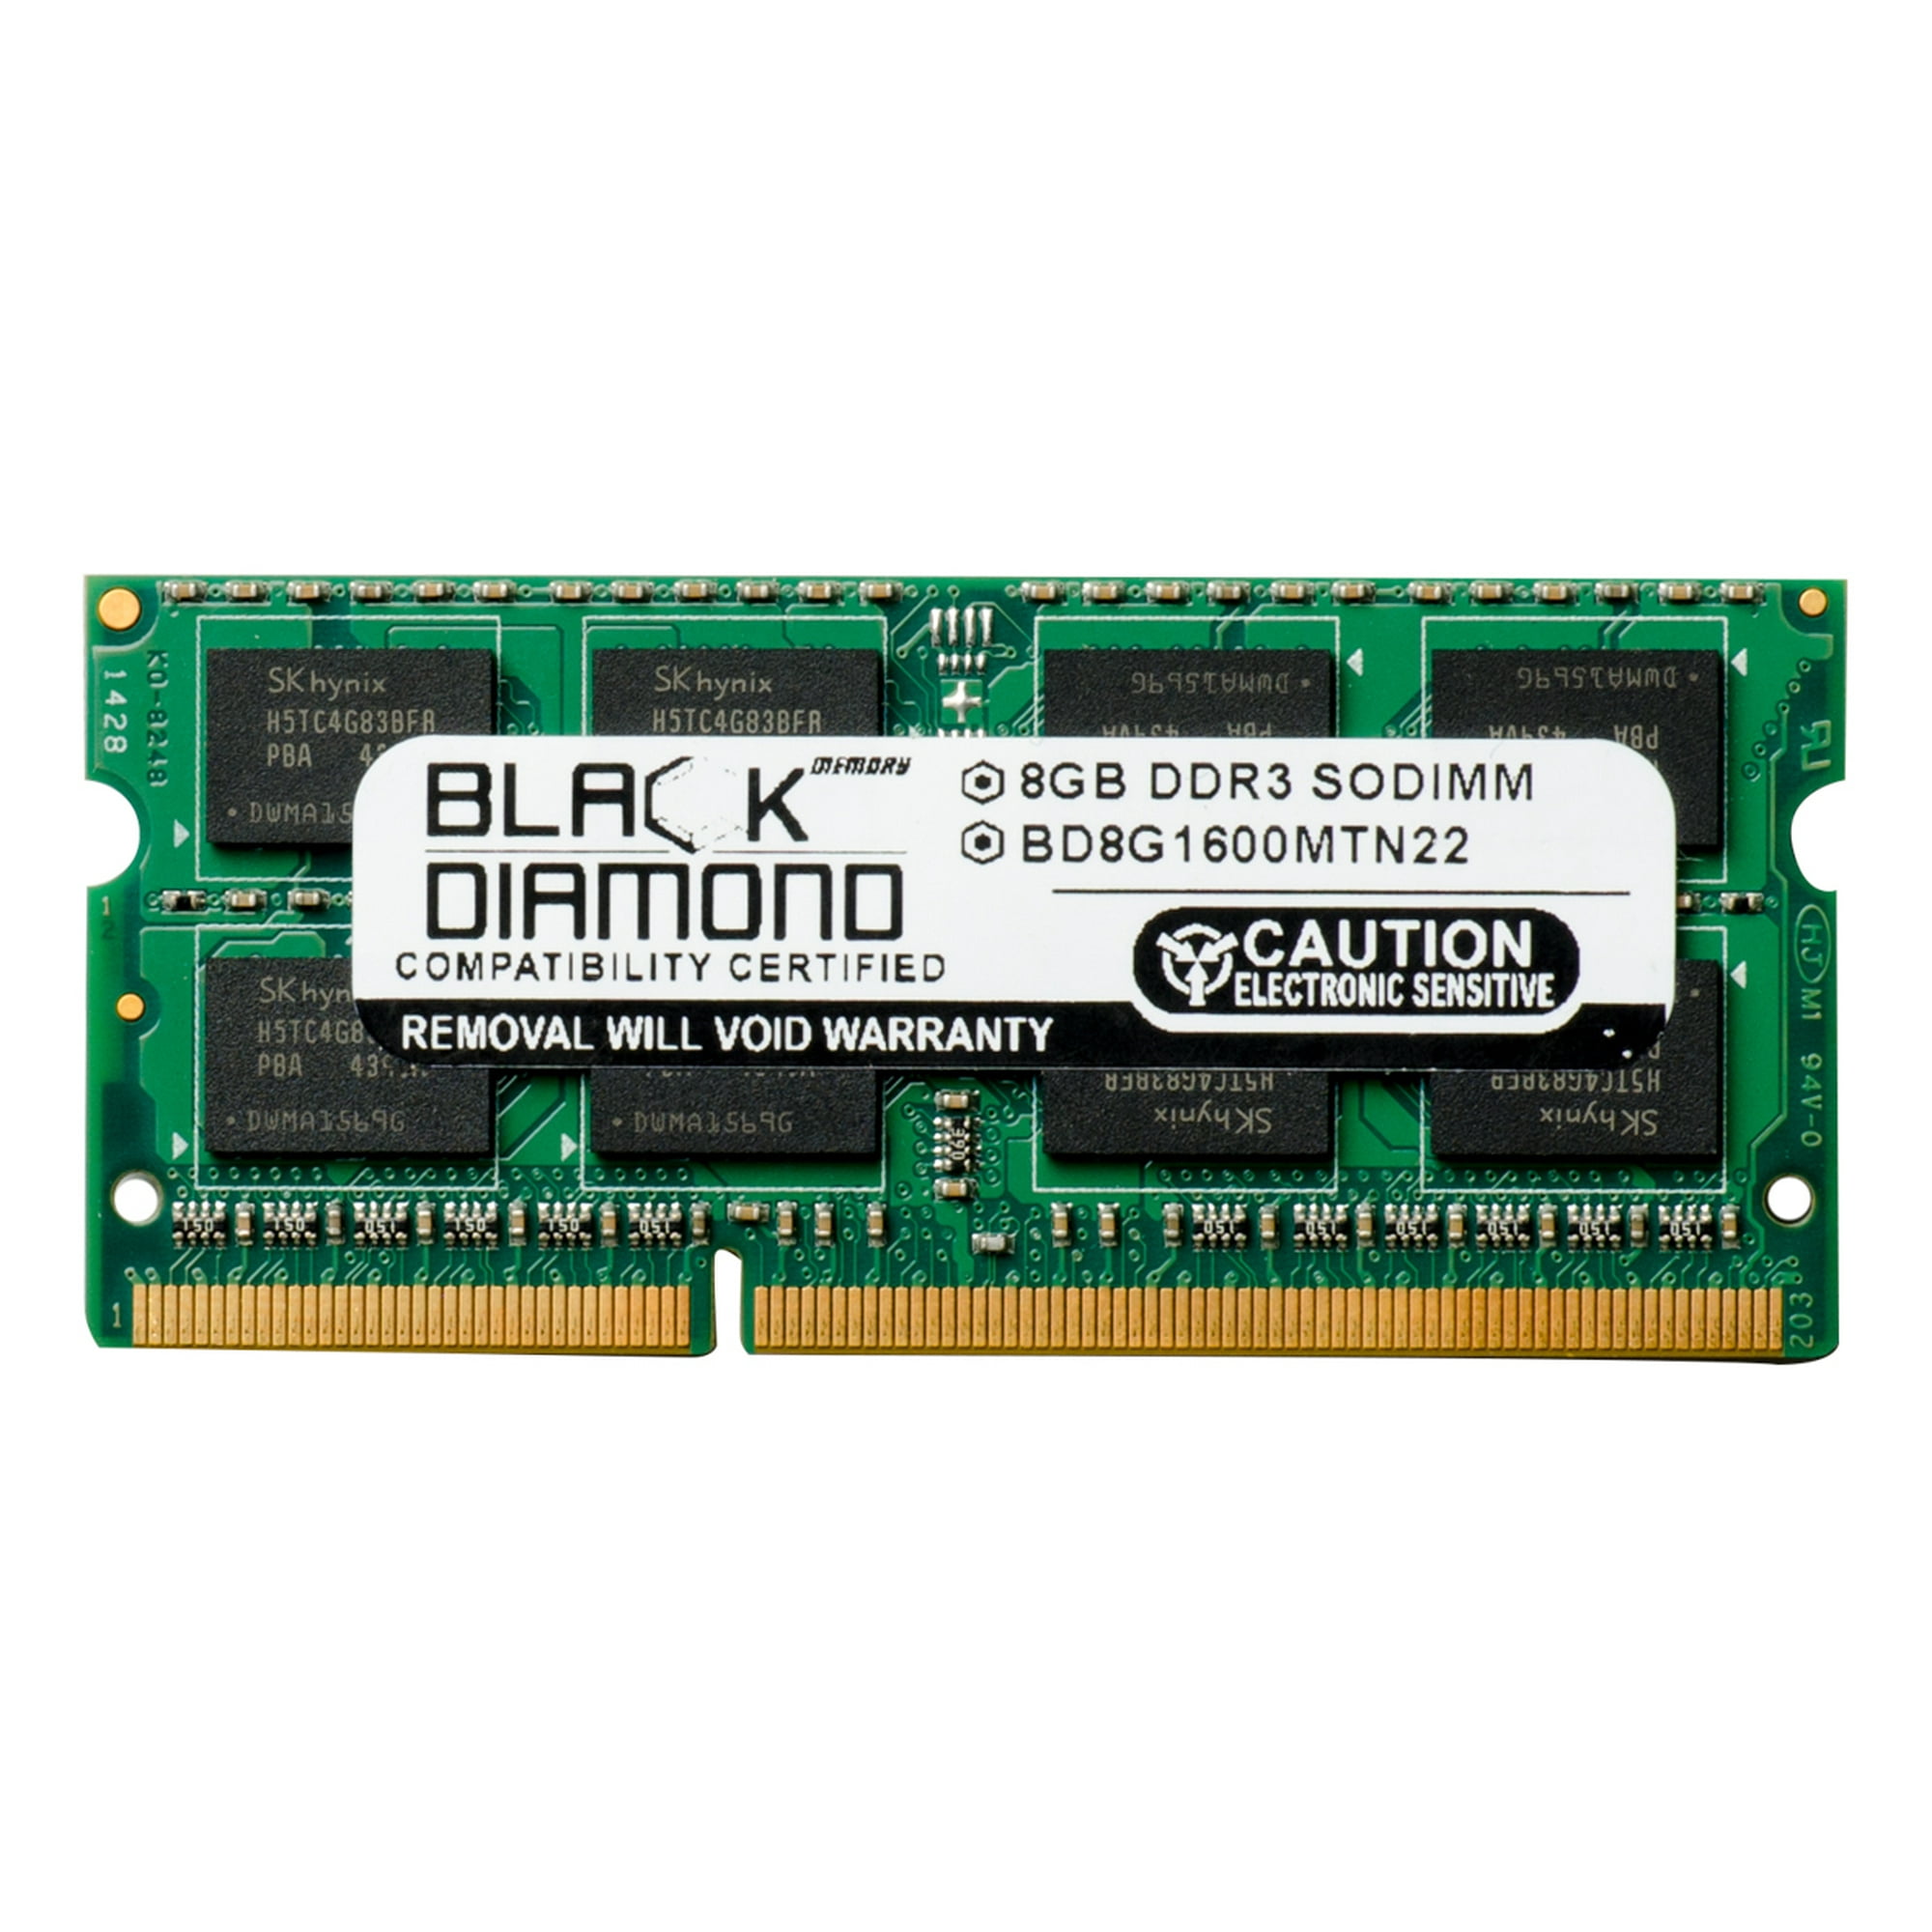 Ram n. Ddr3 SODIMM 204-Pin 8gb. Mua Ram 8gb DDR-3 1333 so-DIMM. Оперативная память 4 ГБ 2 шт. Apple ddr3 1066 so-DIMM 8gb.